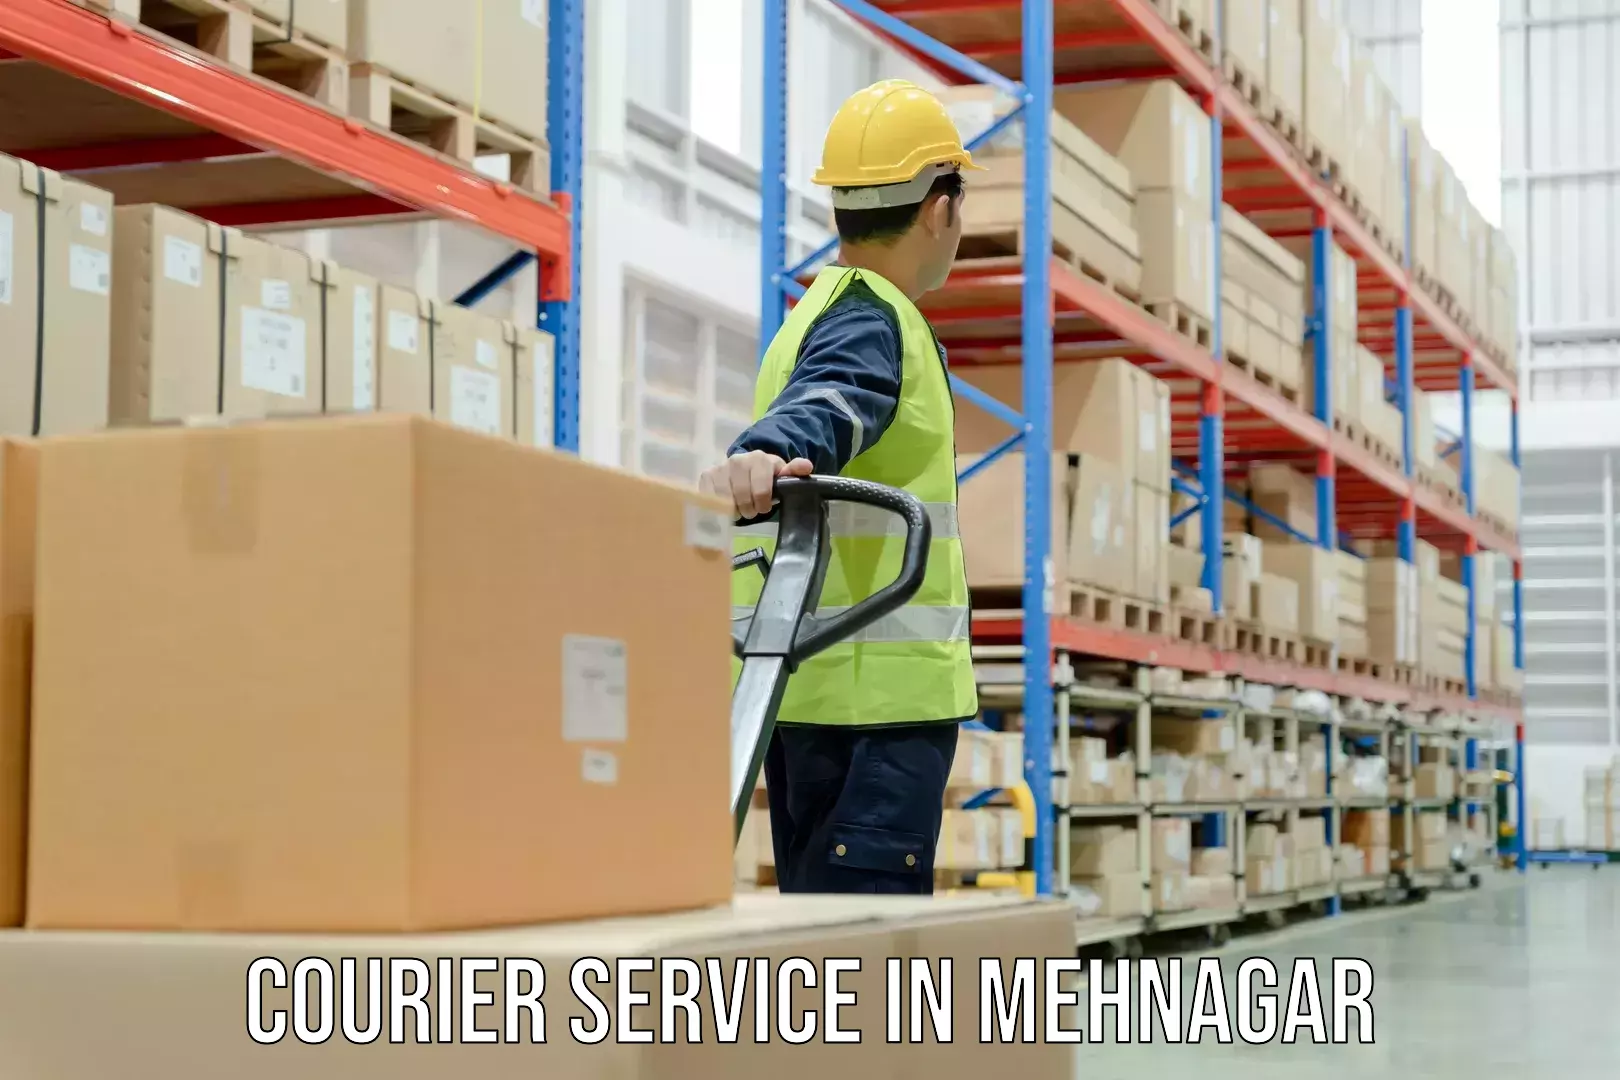 Global parcel delivery in Mehnagar